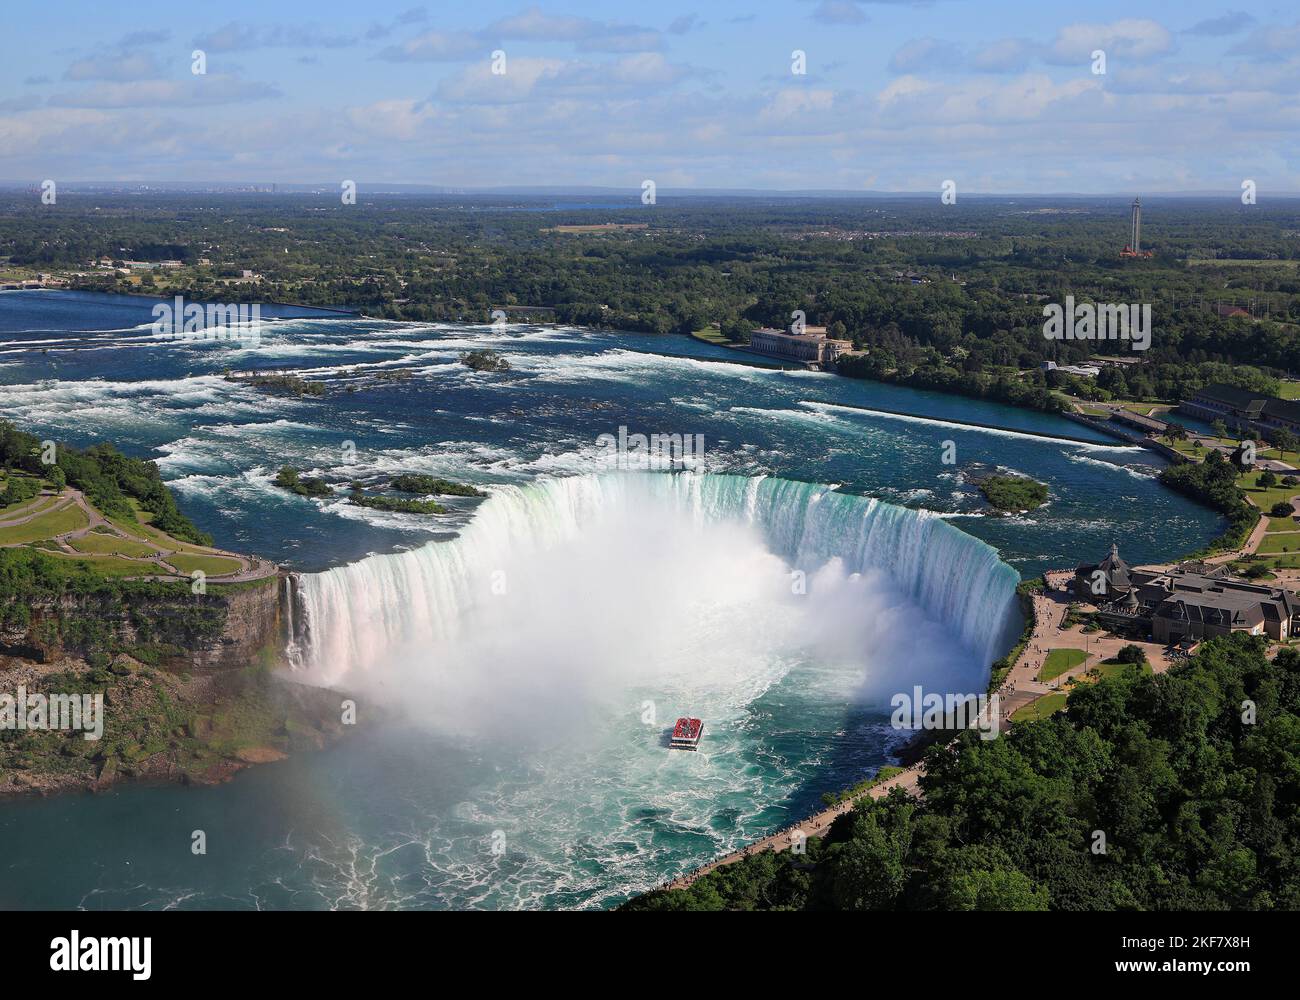 Vue aérienne sur les chutes Horseshoe, y compris le bateau Hornblower naviguant sur la rivière Niagara, le Canada et la frontière naturelle des États-Unis Banque D'Images